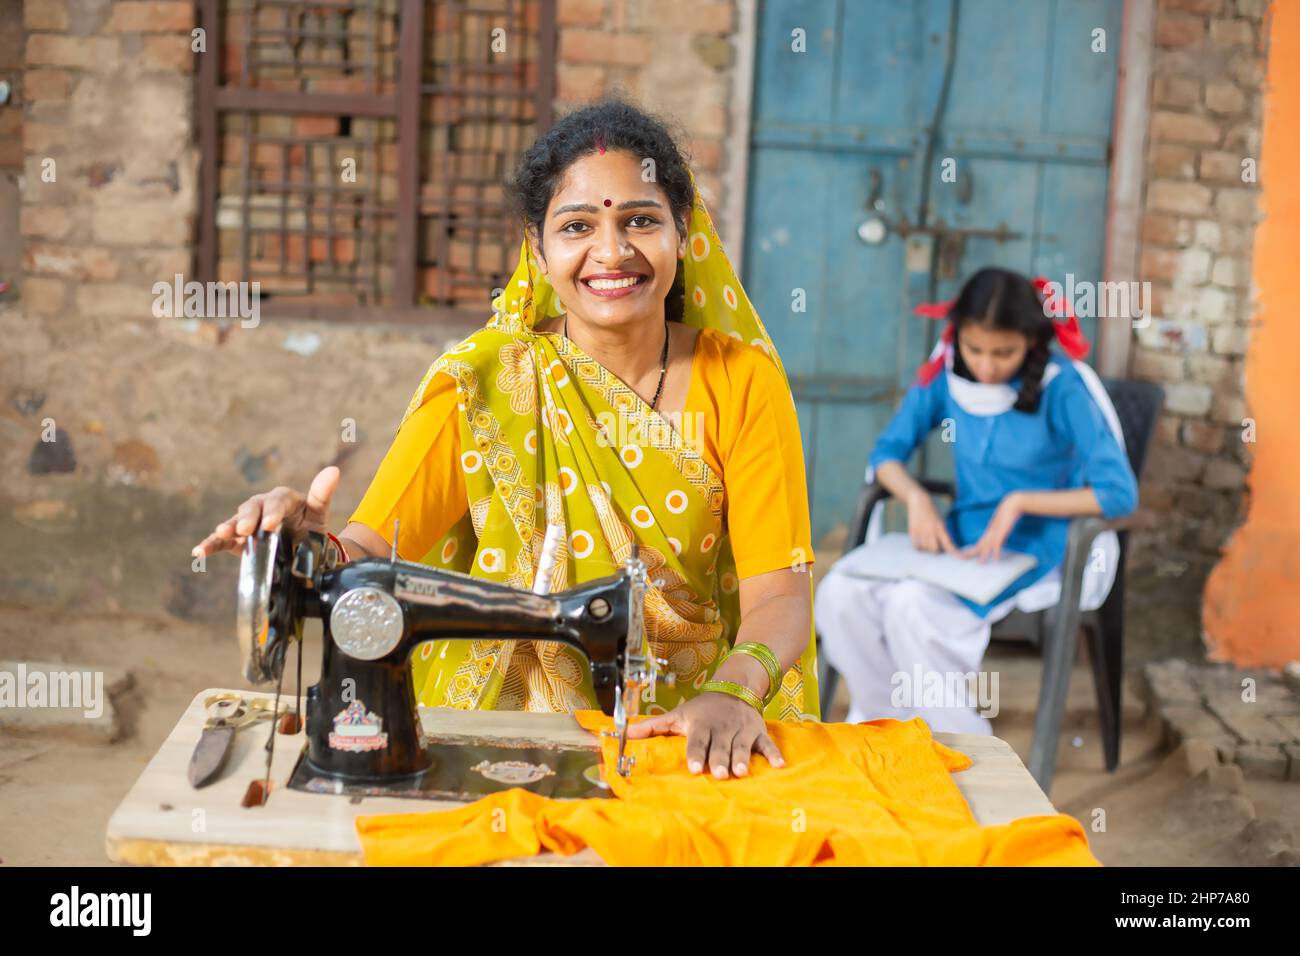 Porträt einer glücklichen, traditionellen indischen Frau, die mit einer Nähmaschine einen Sari trägt, während ihre junge Tochter hinter ihr in Schuluniform studiert. Stockfoto